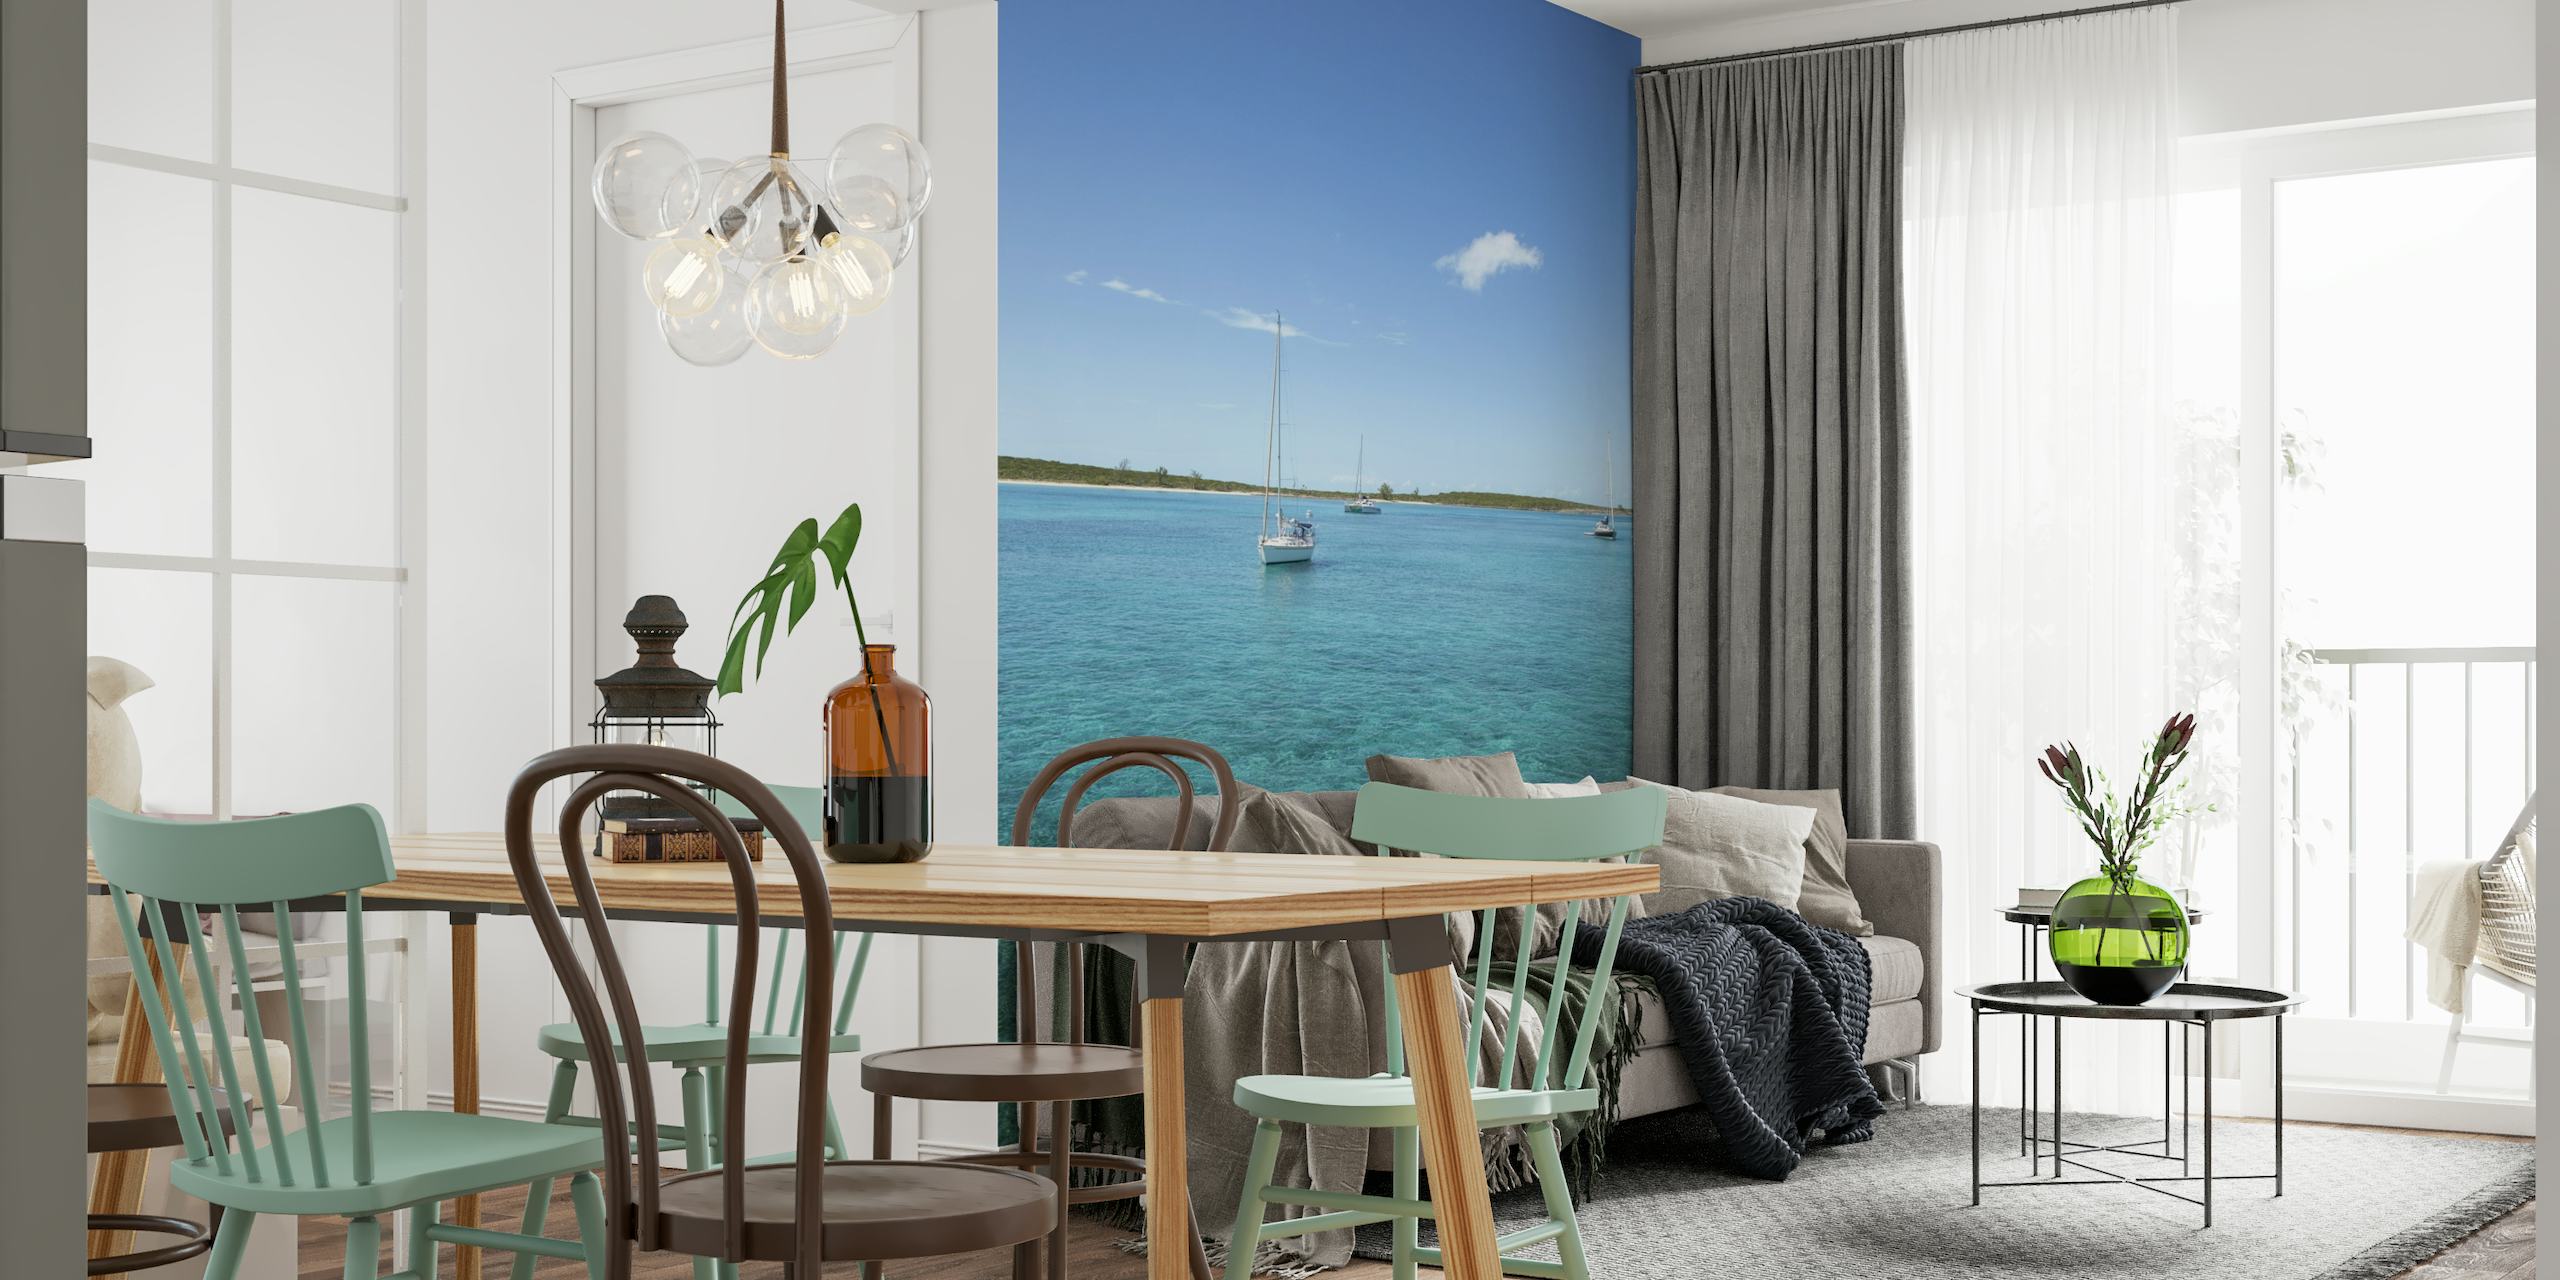 Sejlbåde på vægmaleri i klart blåt Bahamas-vand